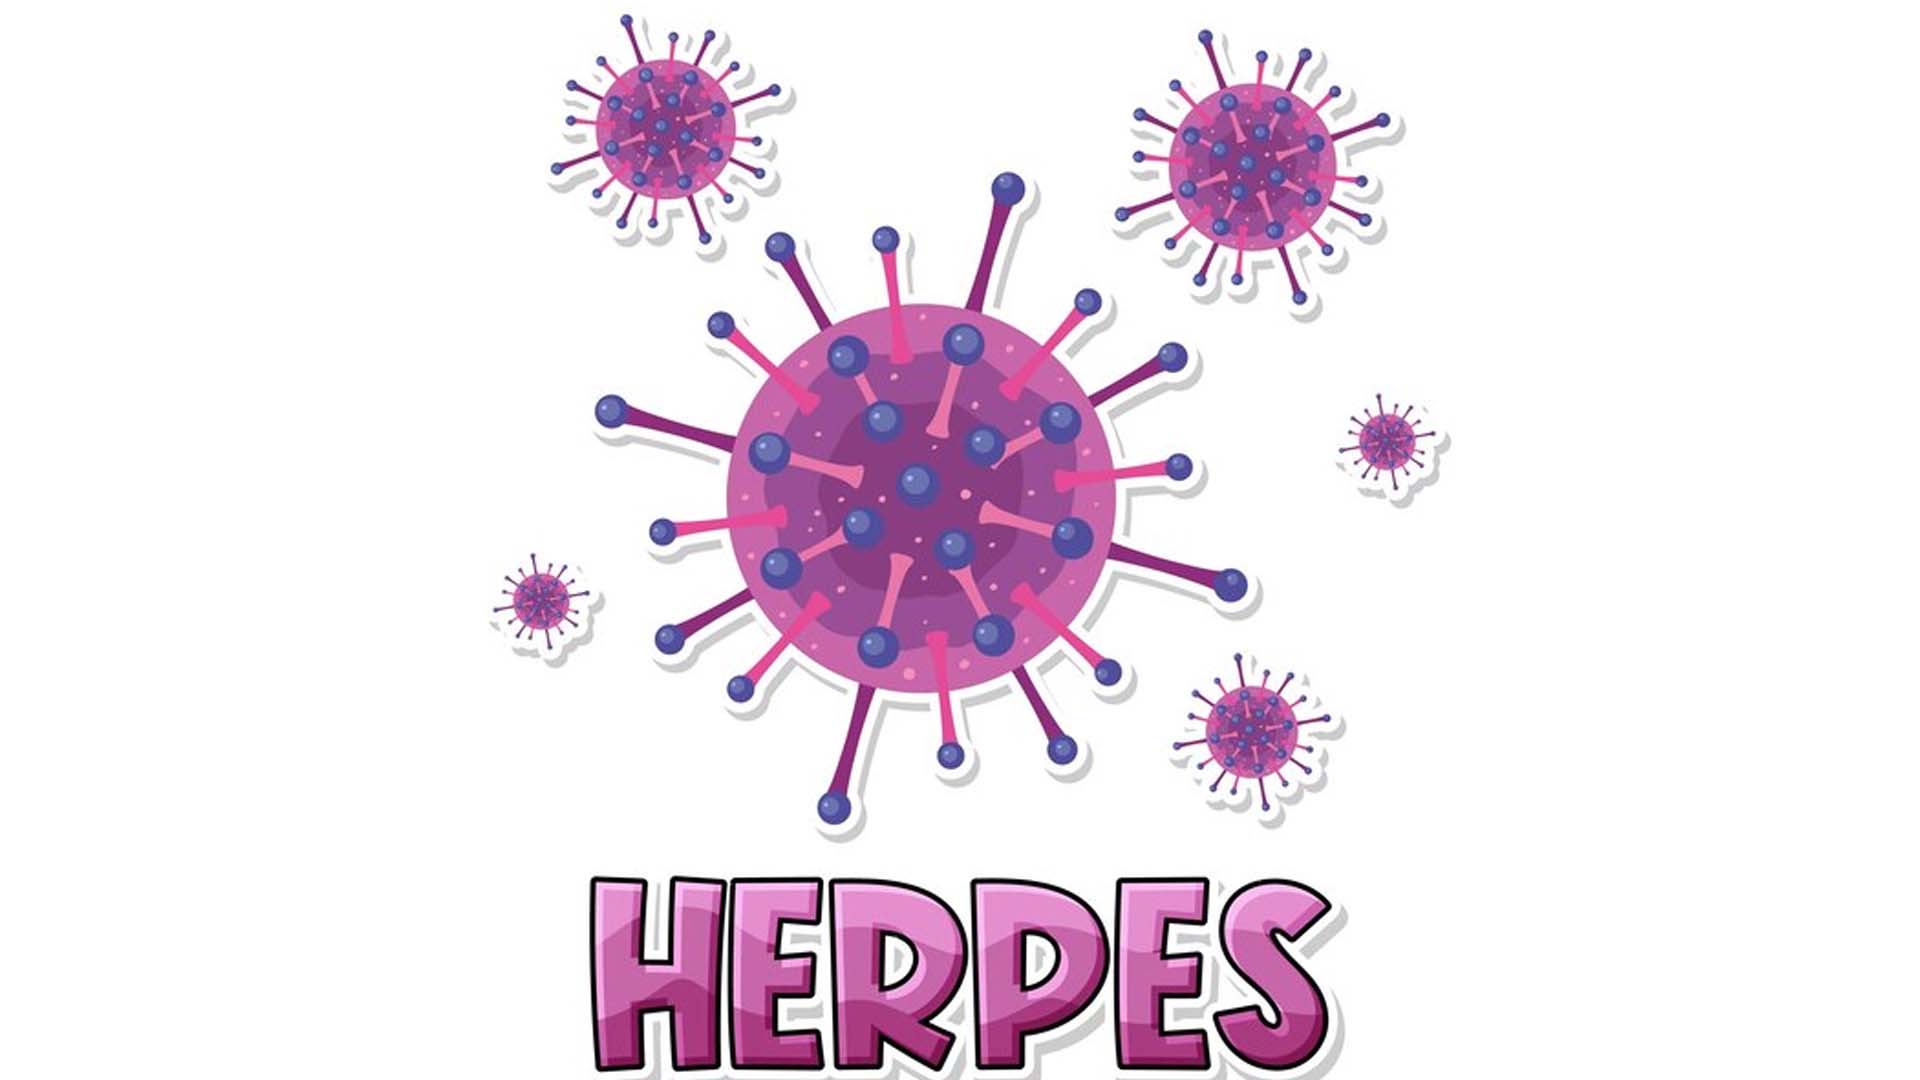 Herpes Virus